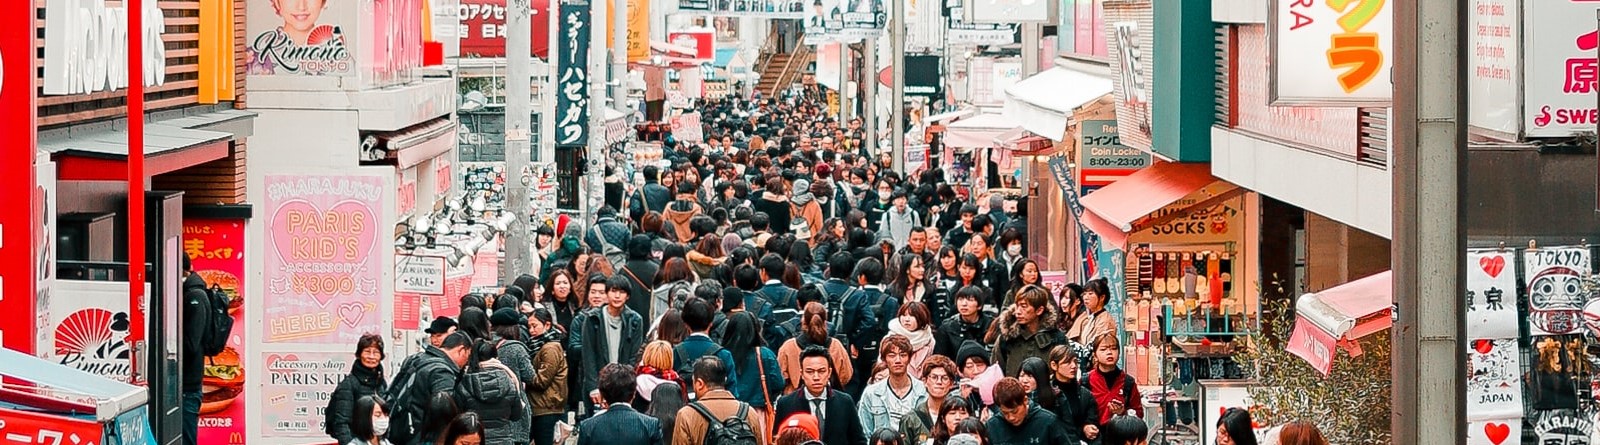 Una calle abarrotada de gente